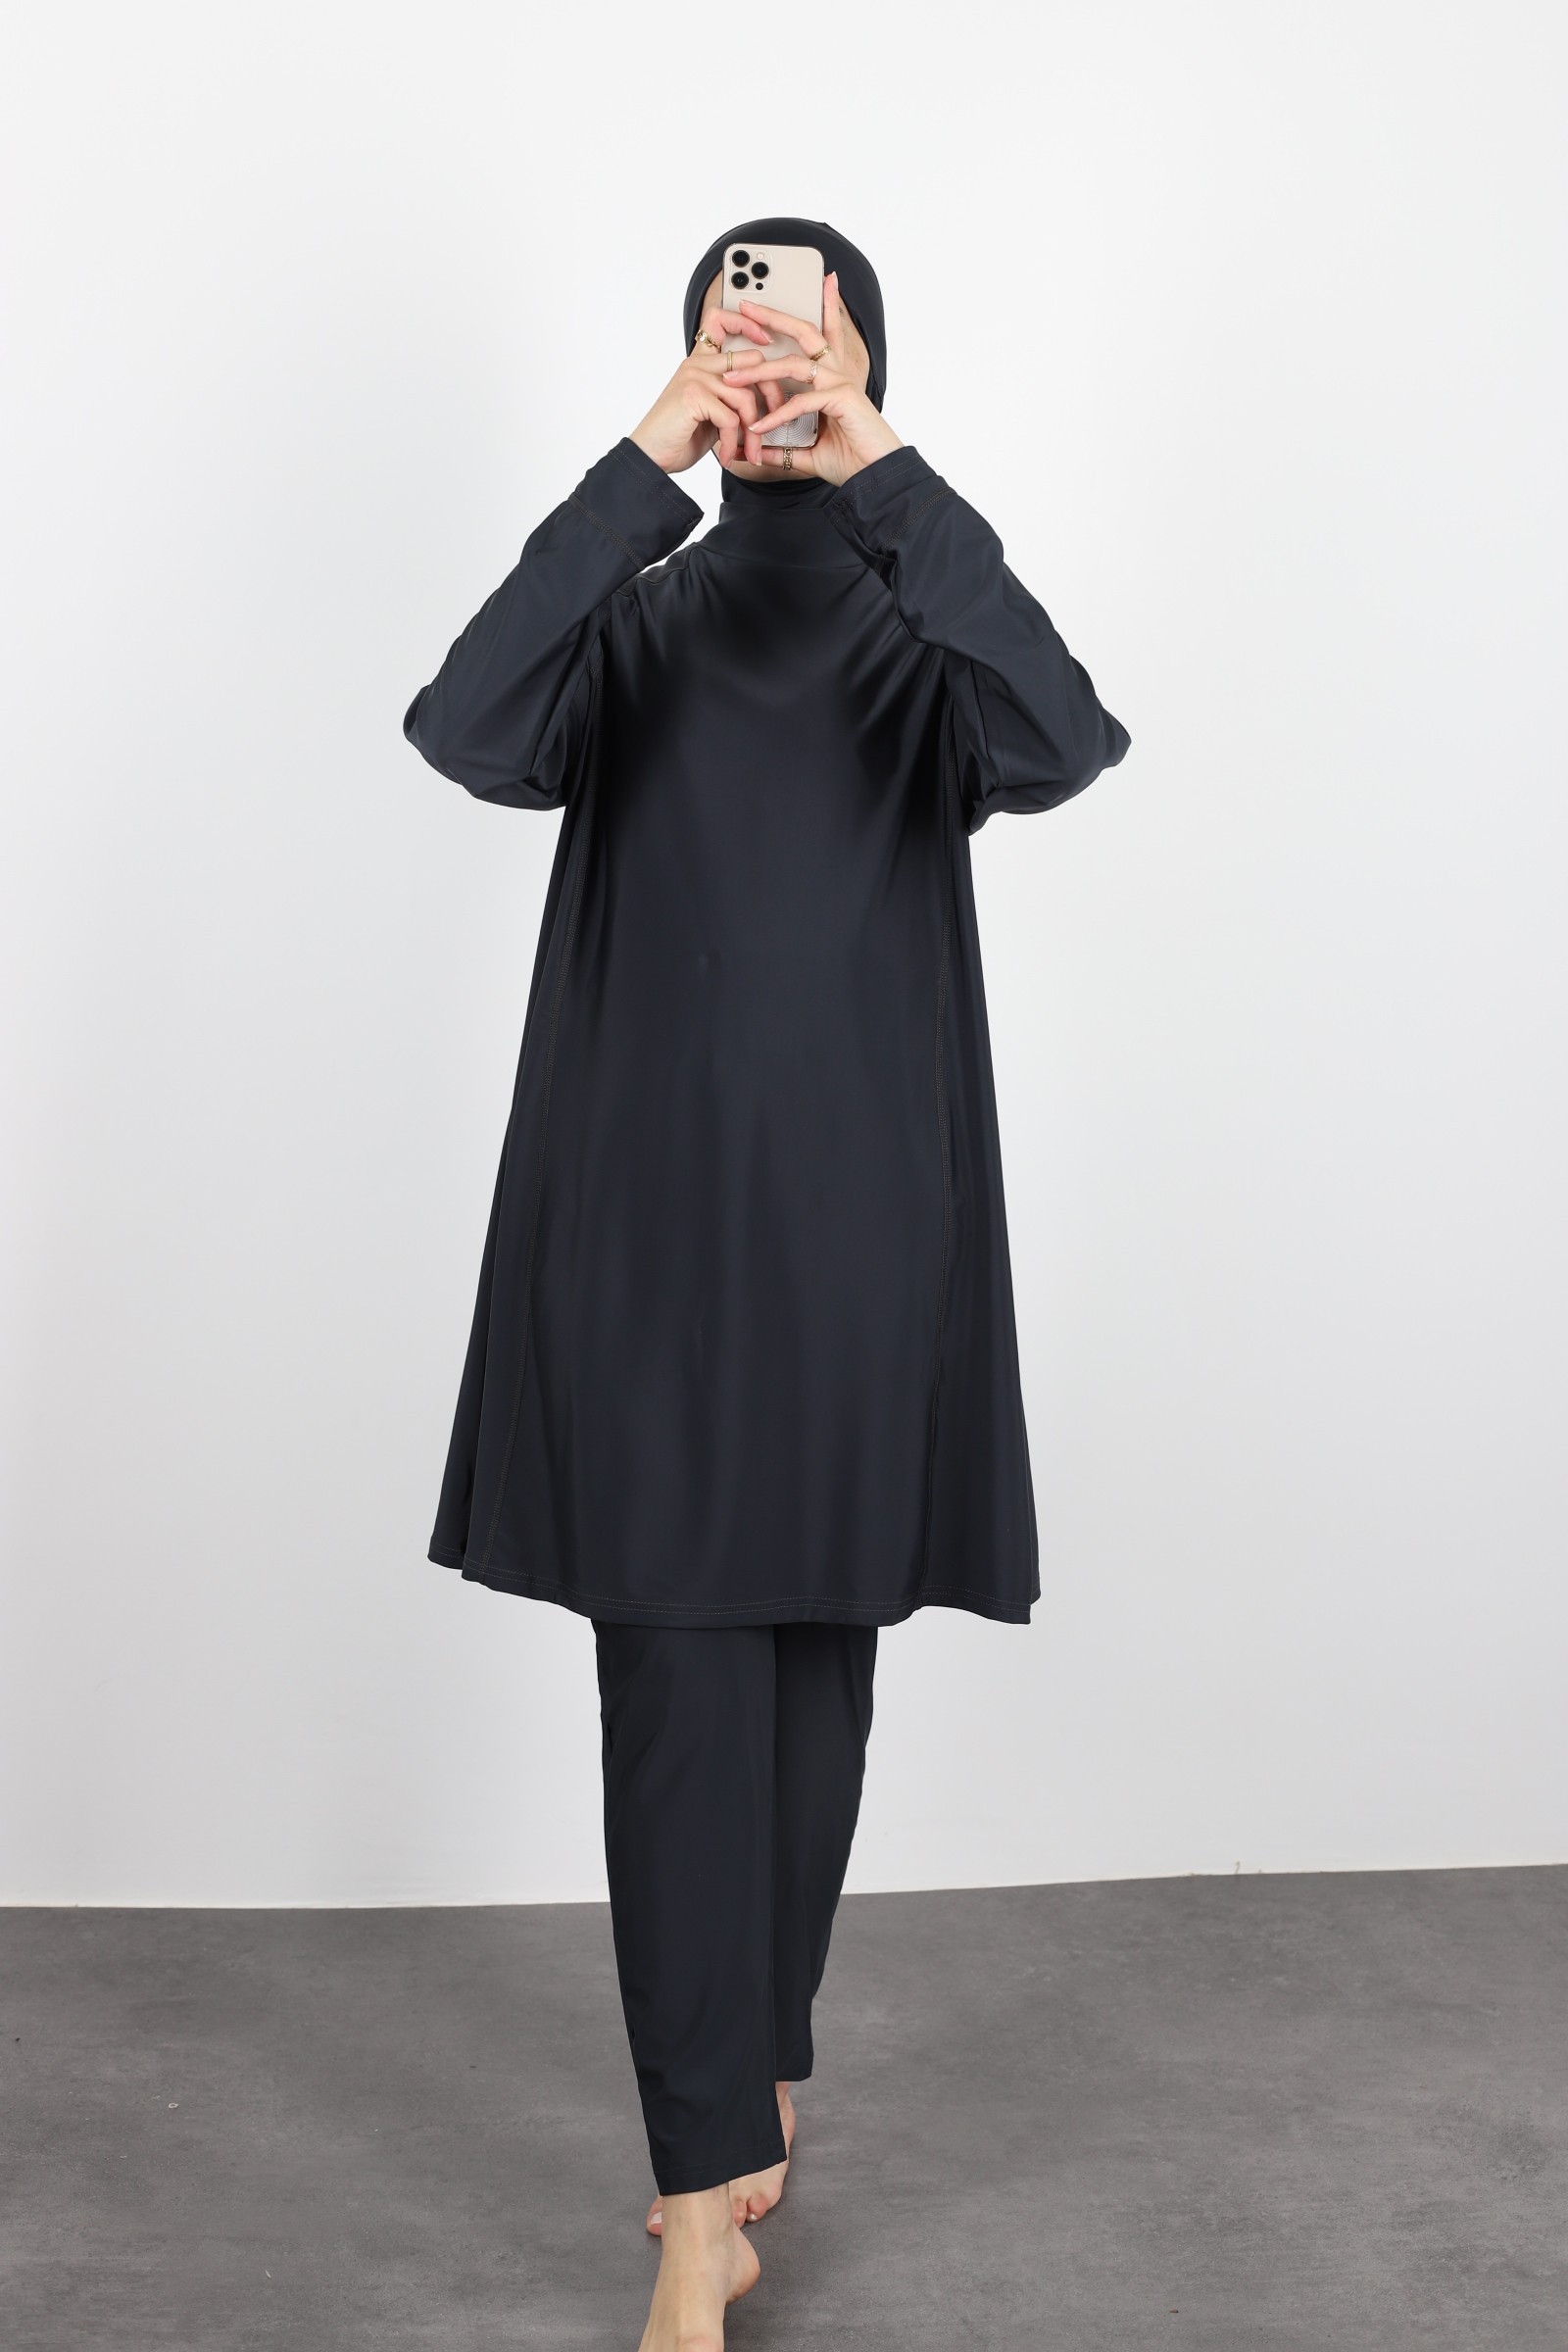 Burkini femme pas chère maillot de bain islamique long